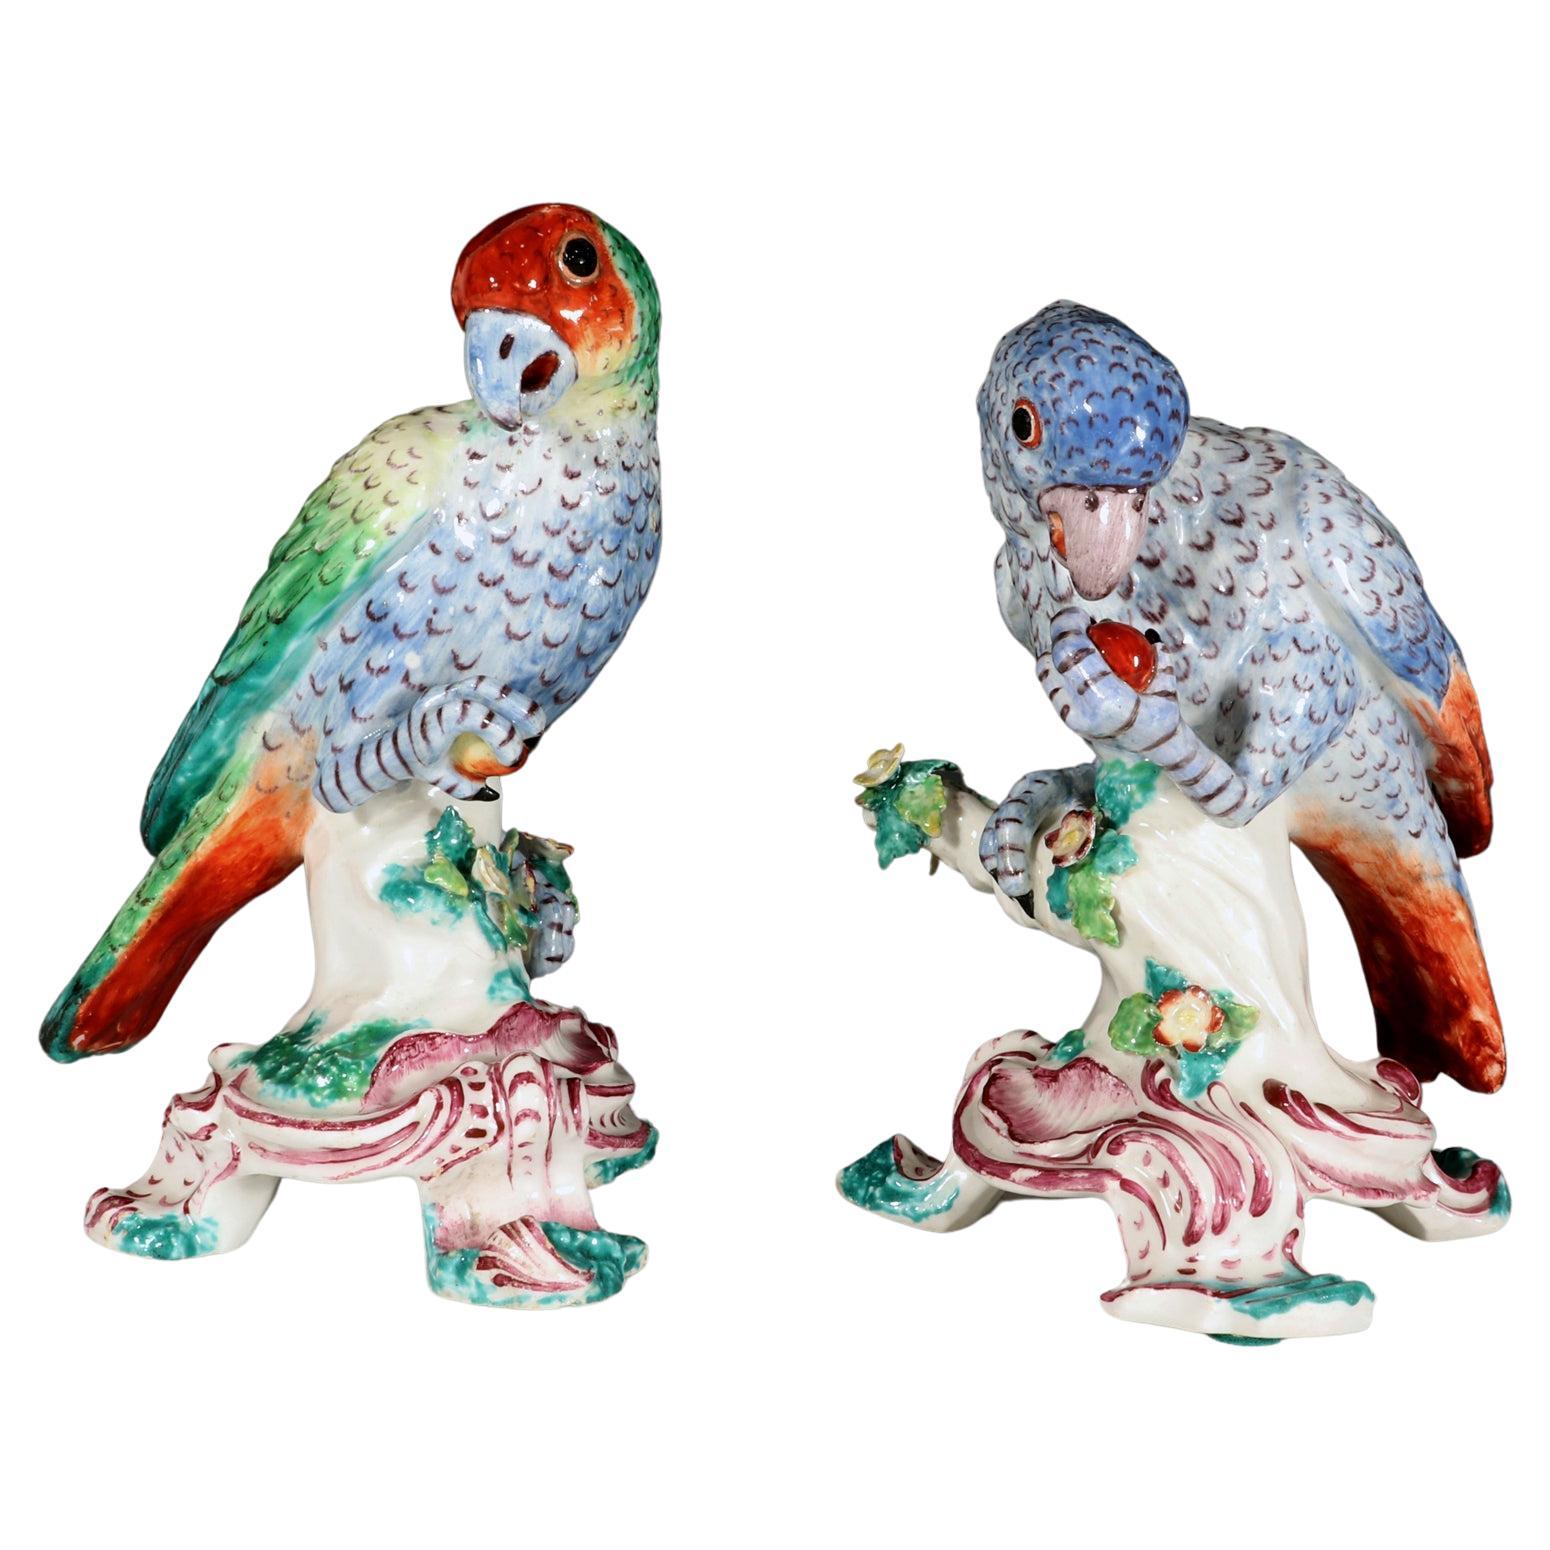 Seltene Bow Porcelain Figuren von südamerikanischen Papageien aus dem 18. Jahrhundert